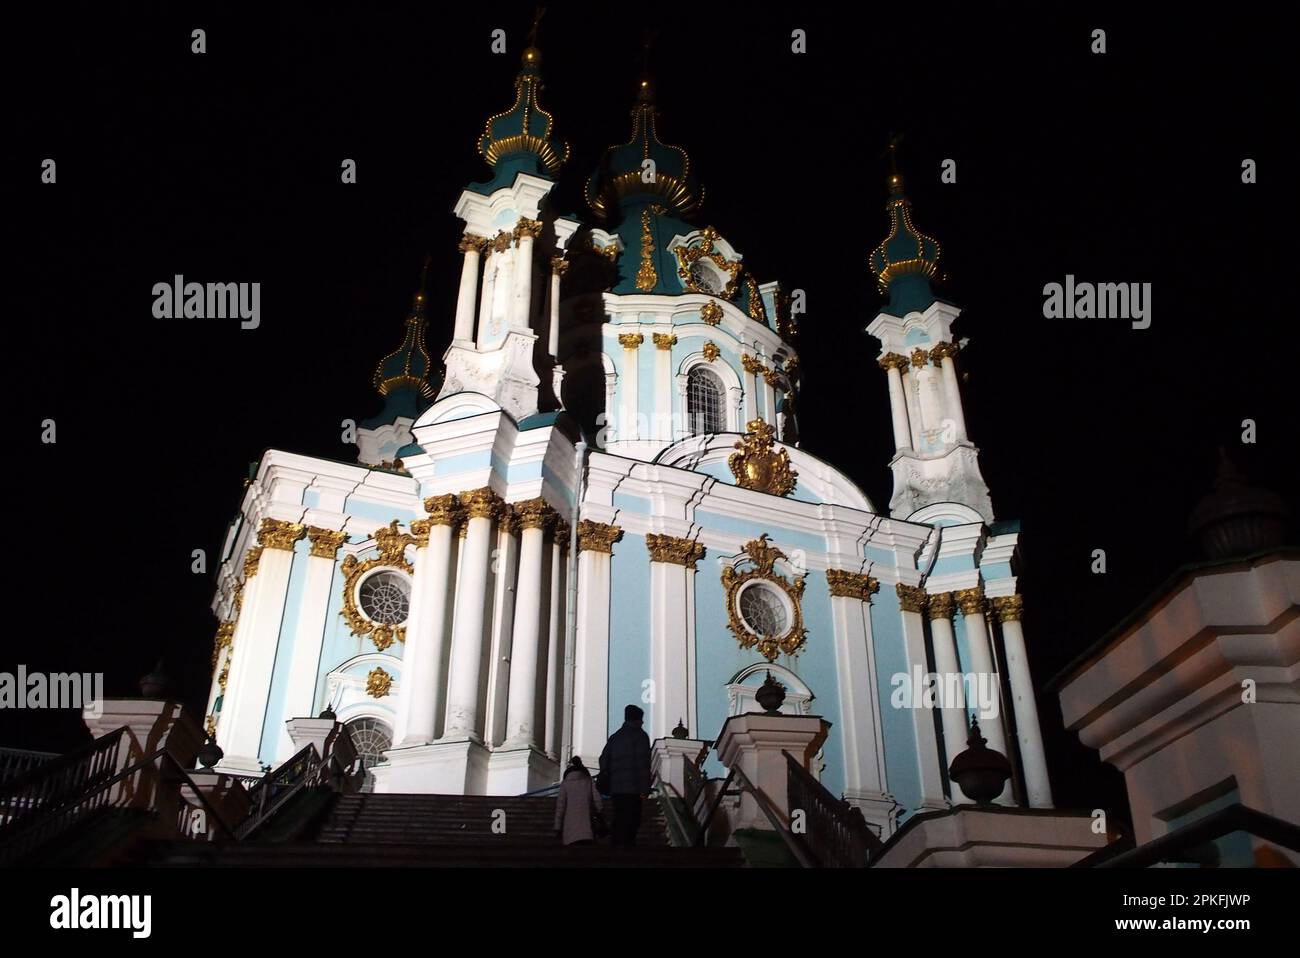 L'église Saint-André, construite en 1747-1754, conçue par Bartolomeo Rastrelli, exemple de Baroque élisabéthaine, illuminée la nuit, Kiev, Ukraine Banque D'Images